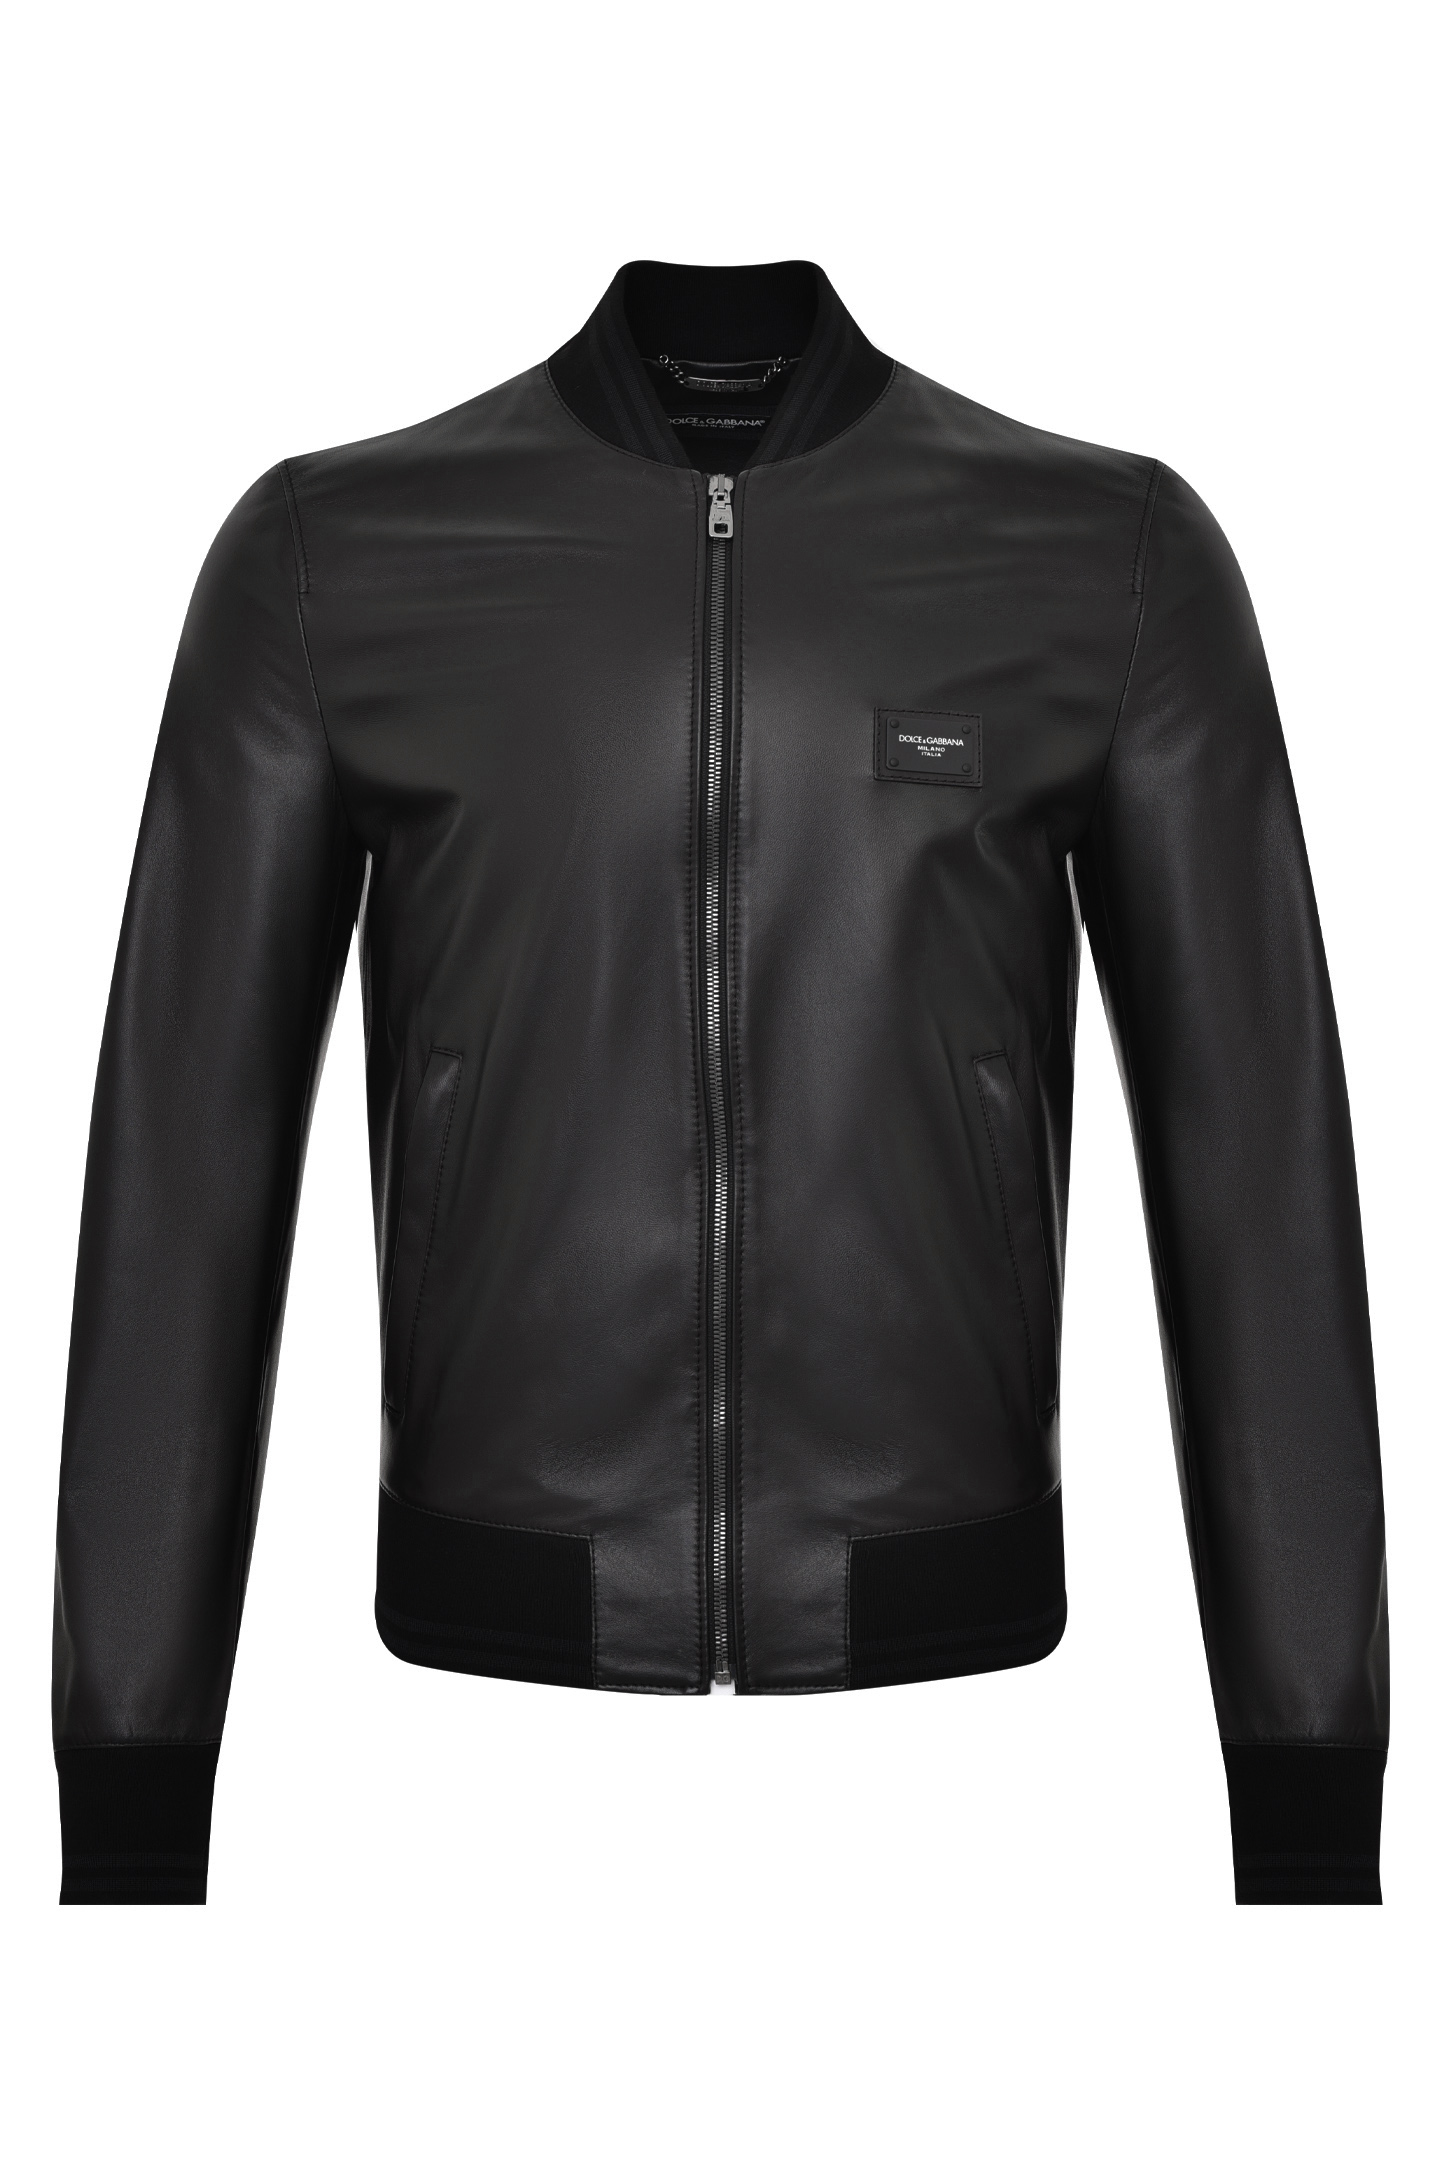 Куртка DOLCE & GABBANA G9PB9L FUL89, цвет: Черный, Мужской